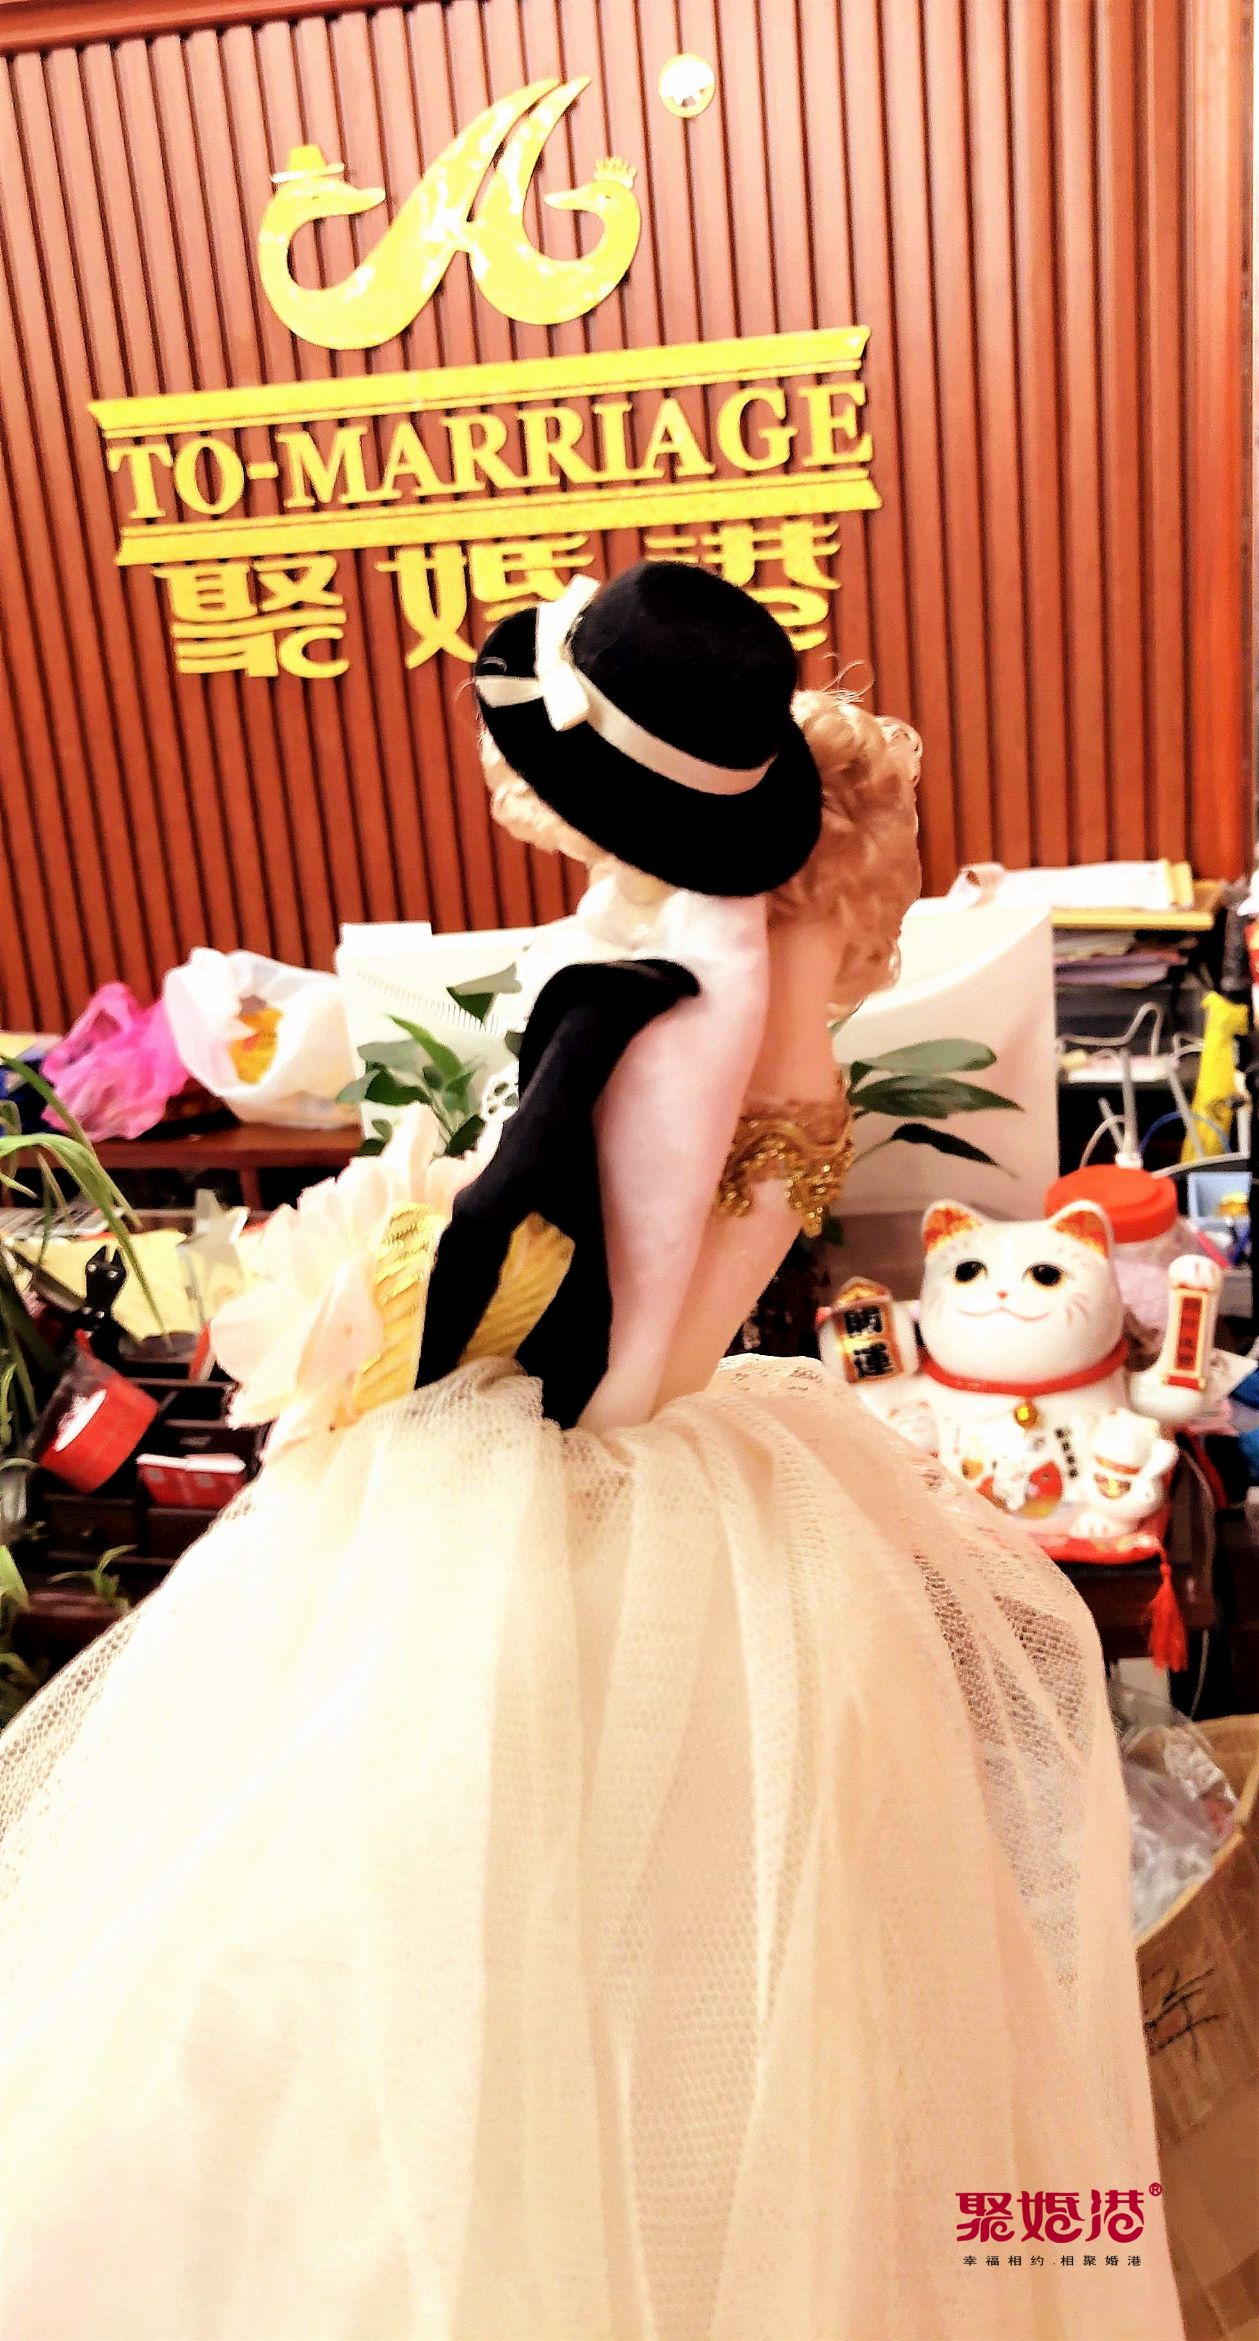 香槟色系列 韩式布艺婚庆压床娃娃 纯手工缝制